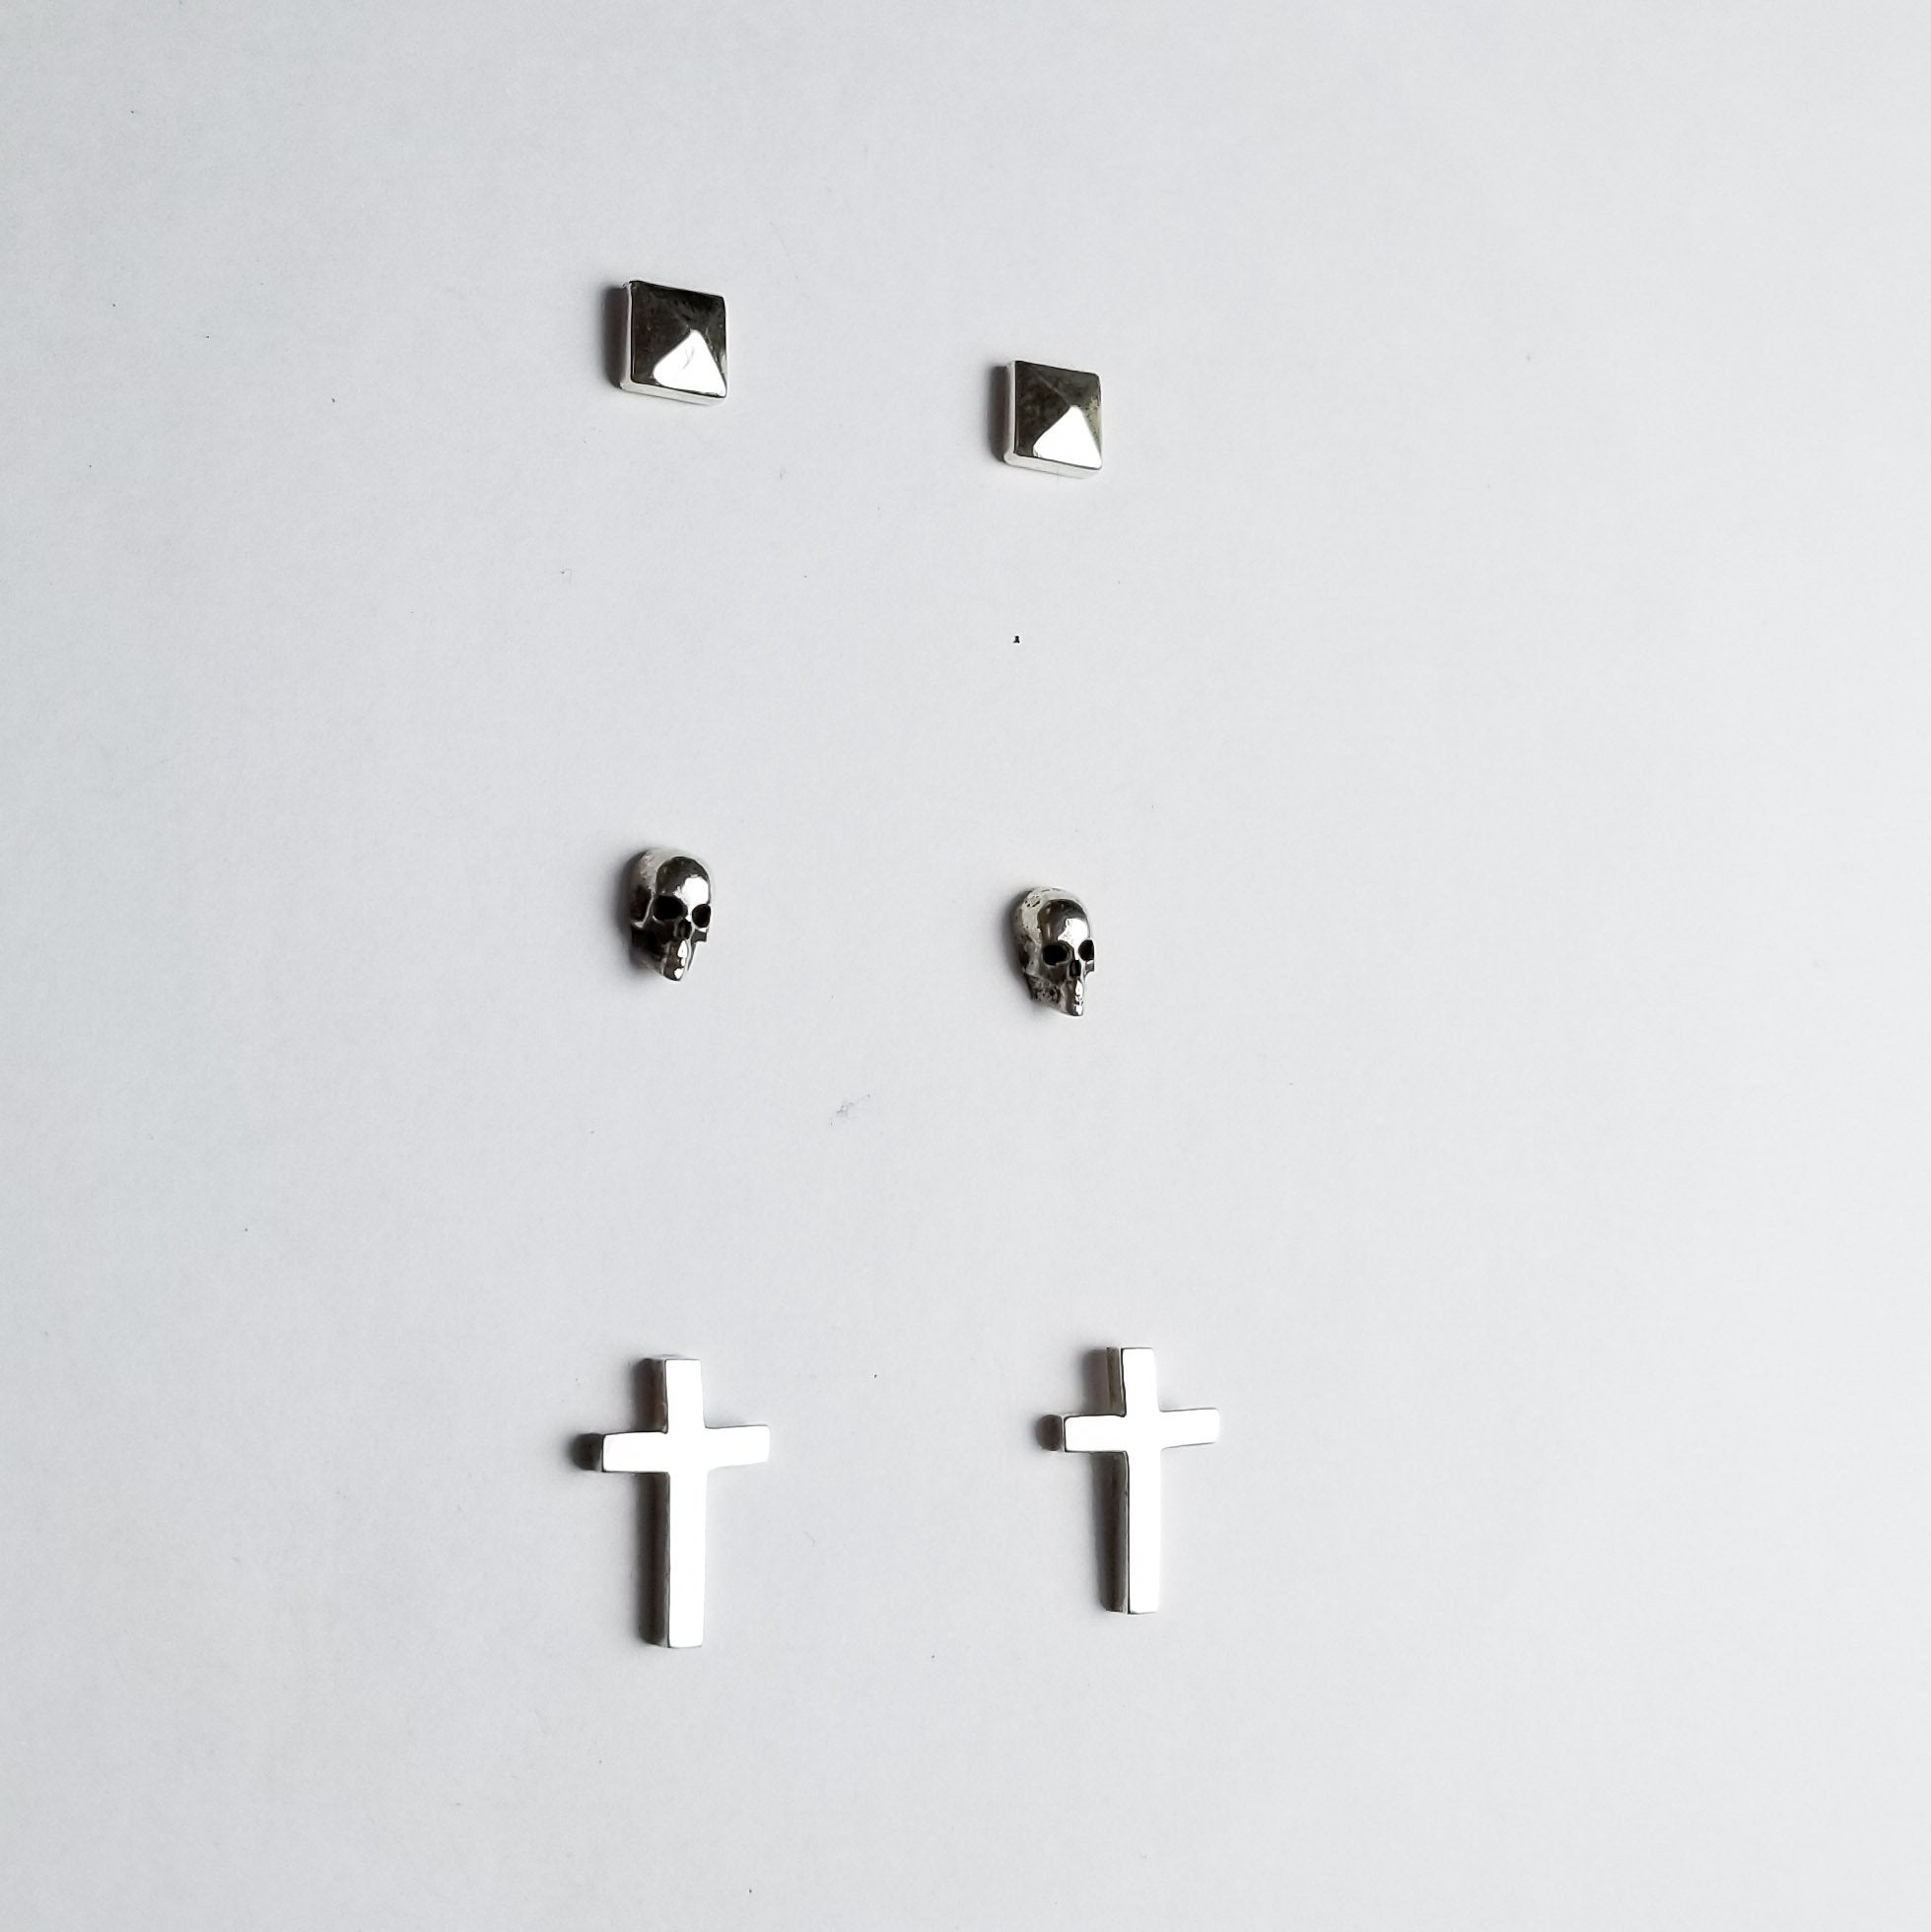 Set of 3 Pairs of Earrings #4 - Skull, Cross & Pyramid Studs - Inchoo Bijoux